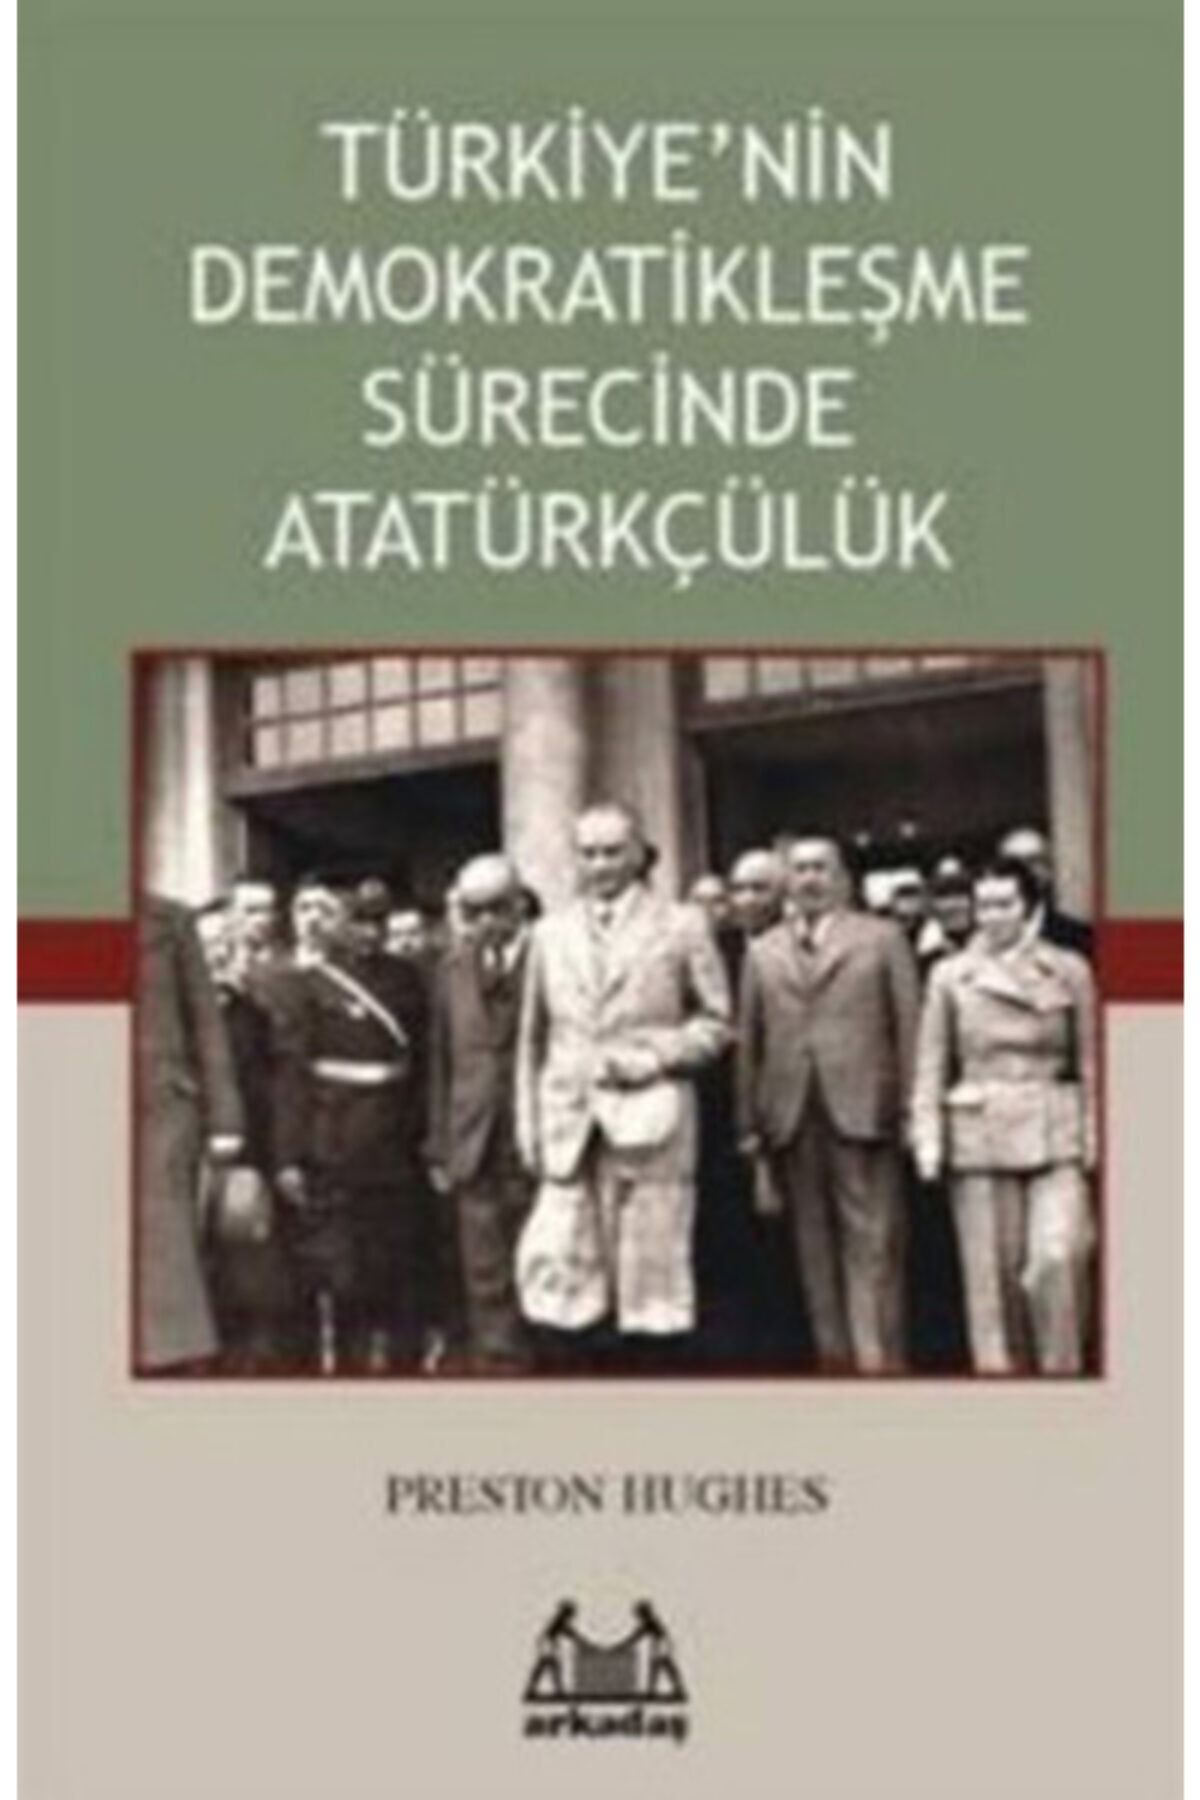 Arkadaş Yayıncılık Türkiye’nin Demokratikleşme Sürecinde Atatürkçülük